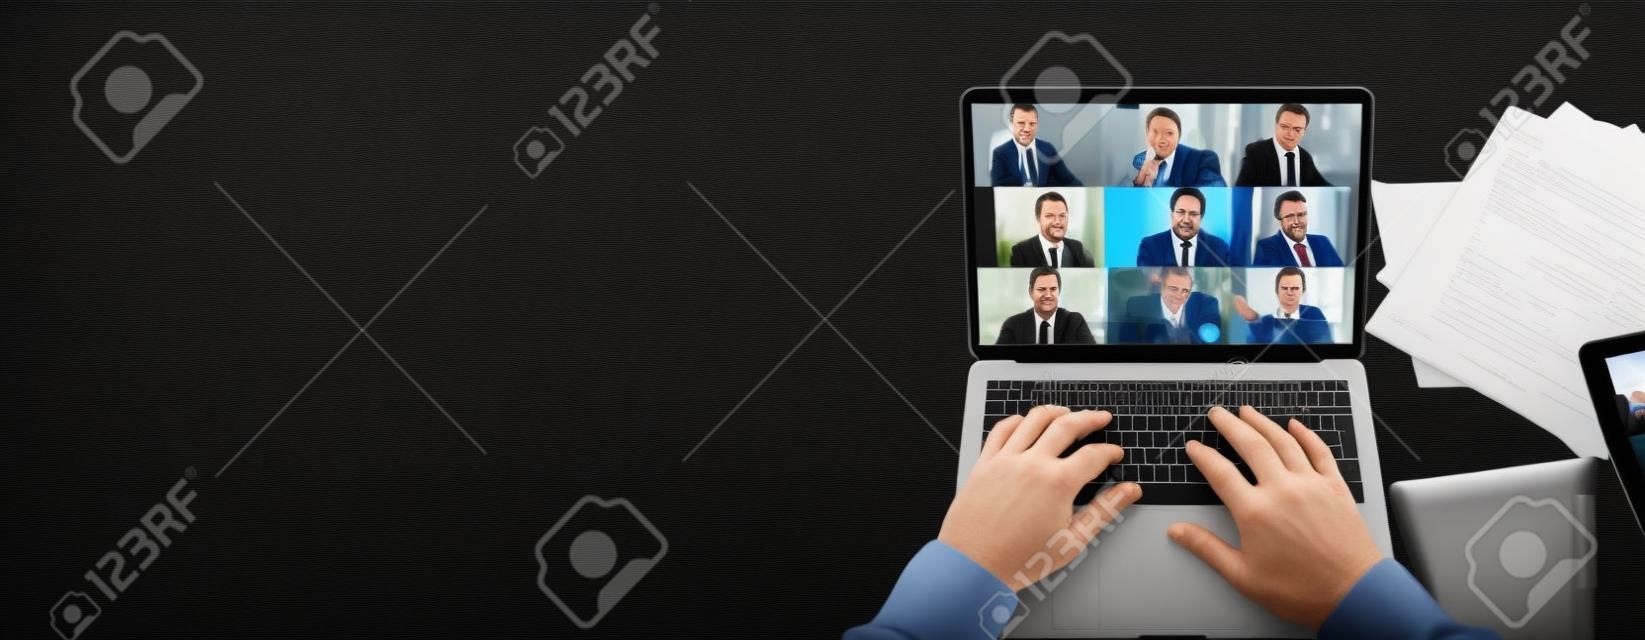 Vista superior da tela do laptop com participantes da videoconferência e mãos maduras do homem no teclado, laptop está em um desktop preto.